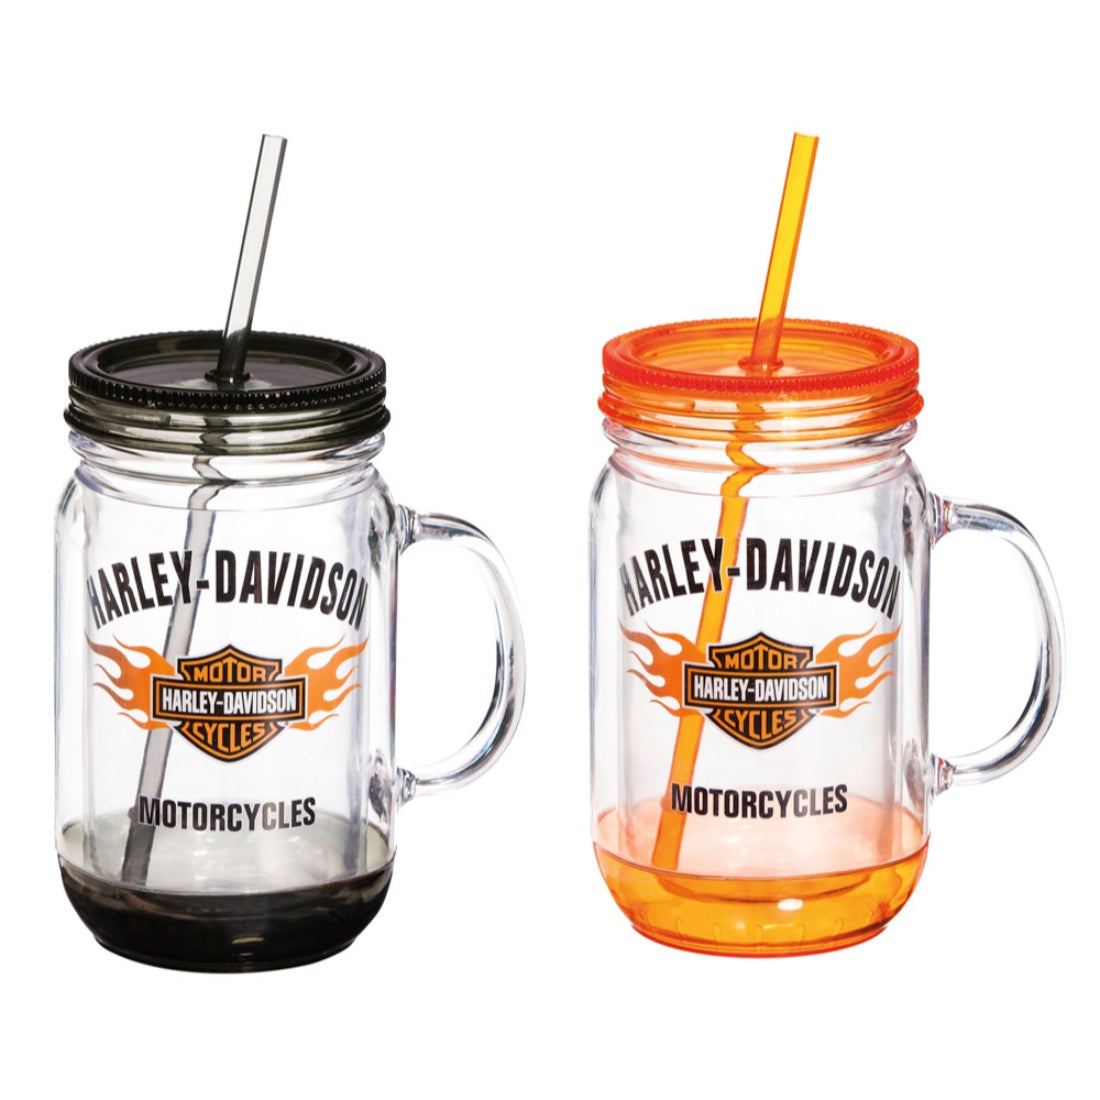 Harley Davidson Bar and Shield Flames Mason Jar Cup, Set of 2